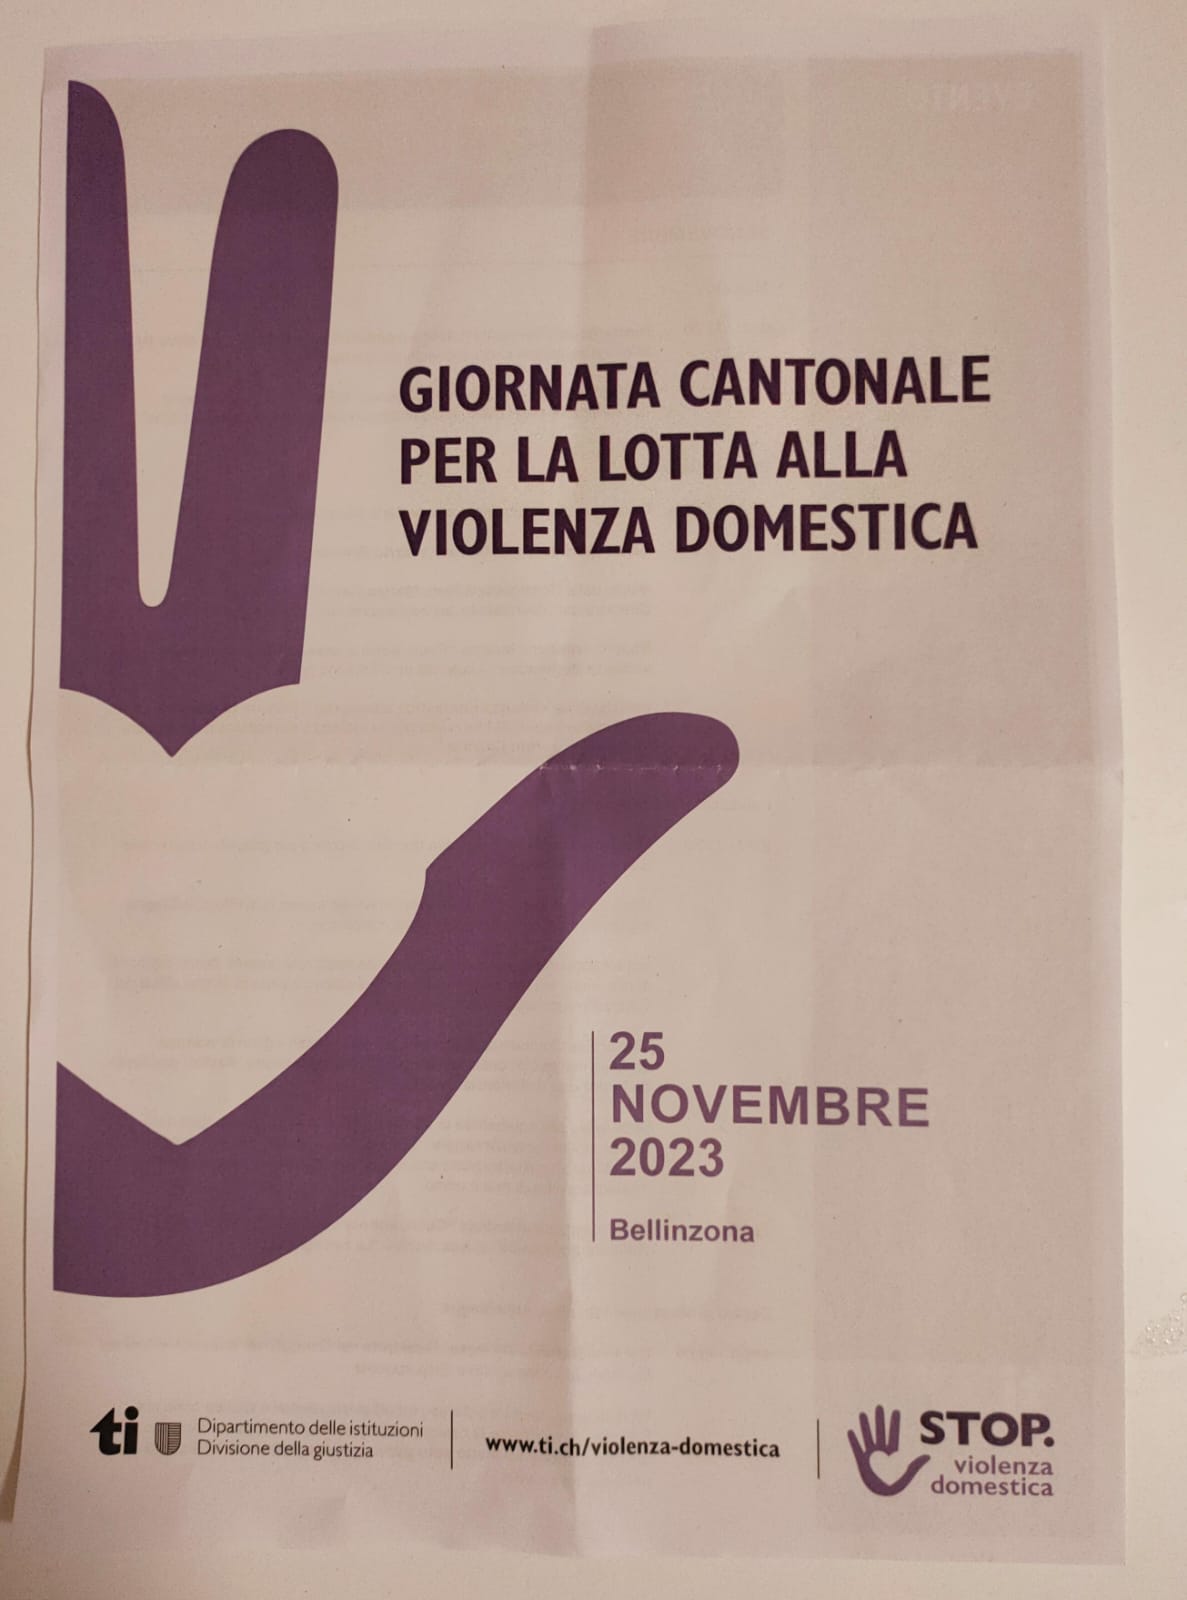 La Giornata Cantonale per la lotta alla violenza domestica 2023